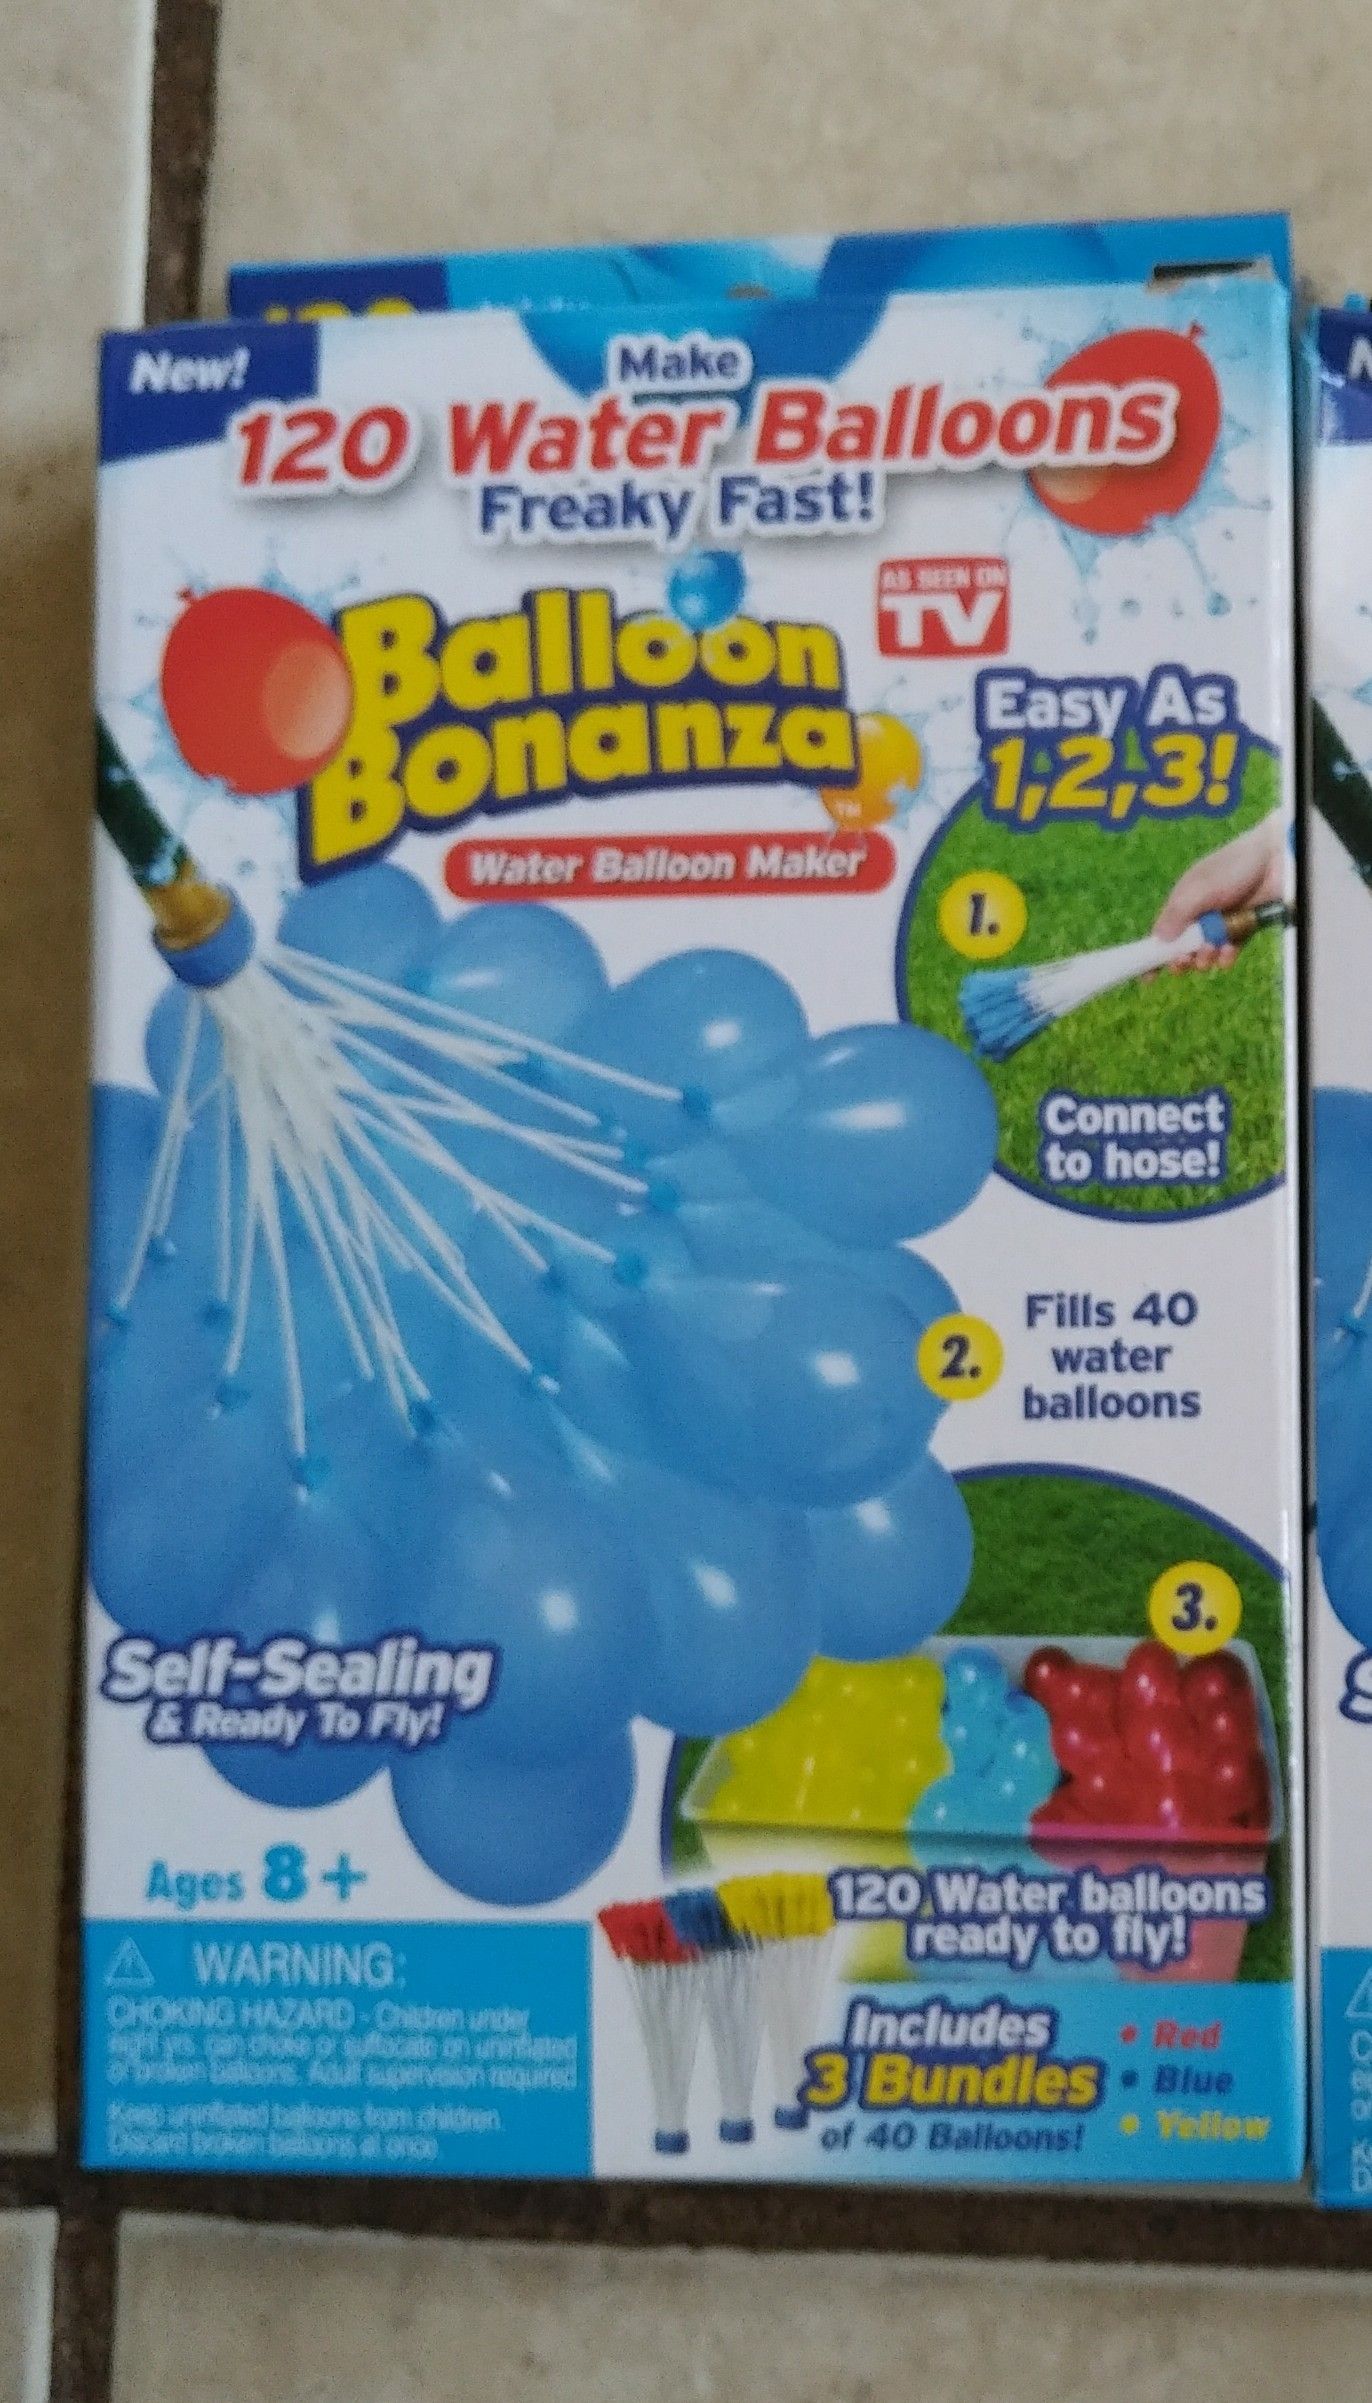 Water balloon bonanza